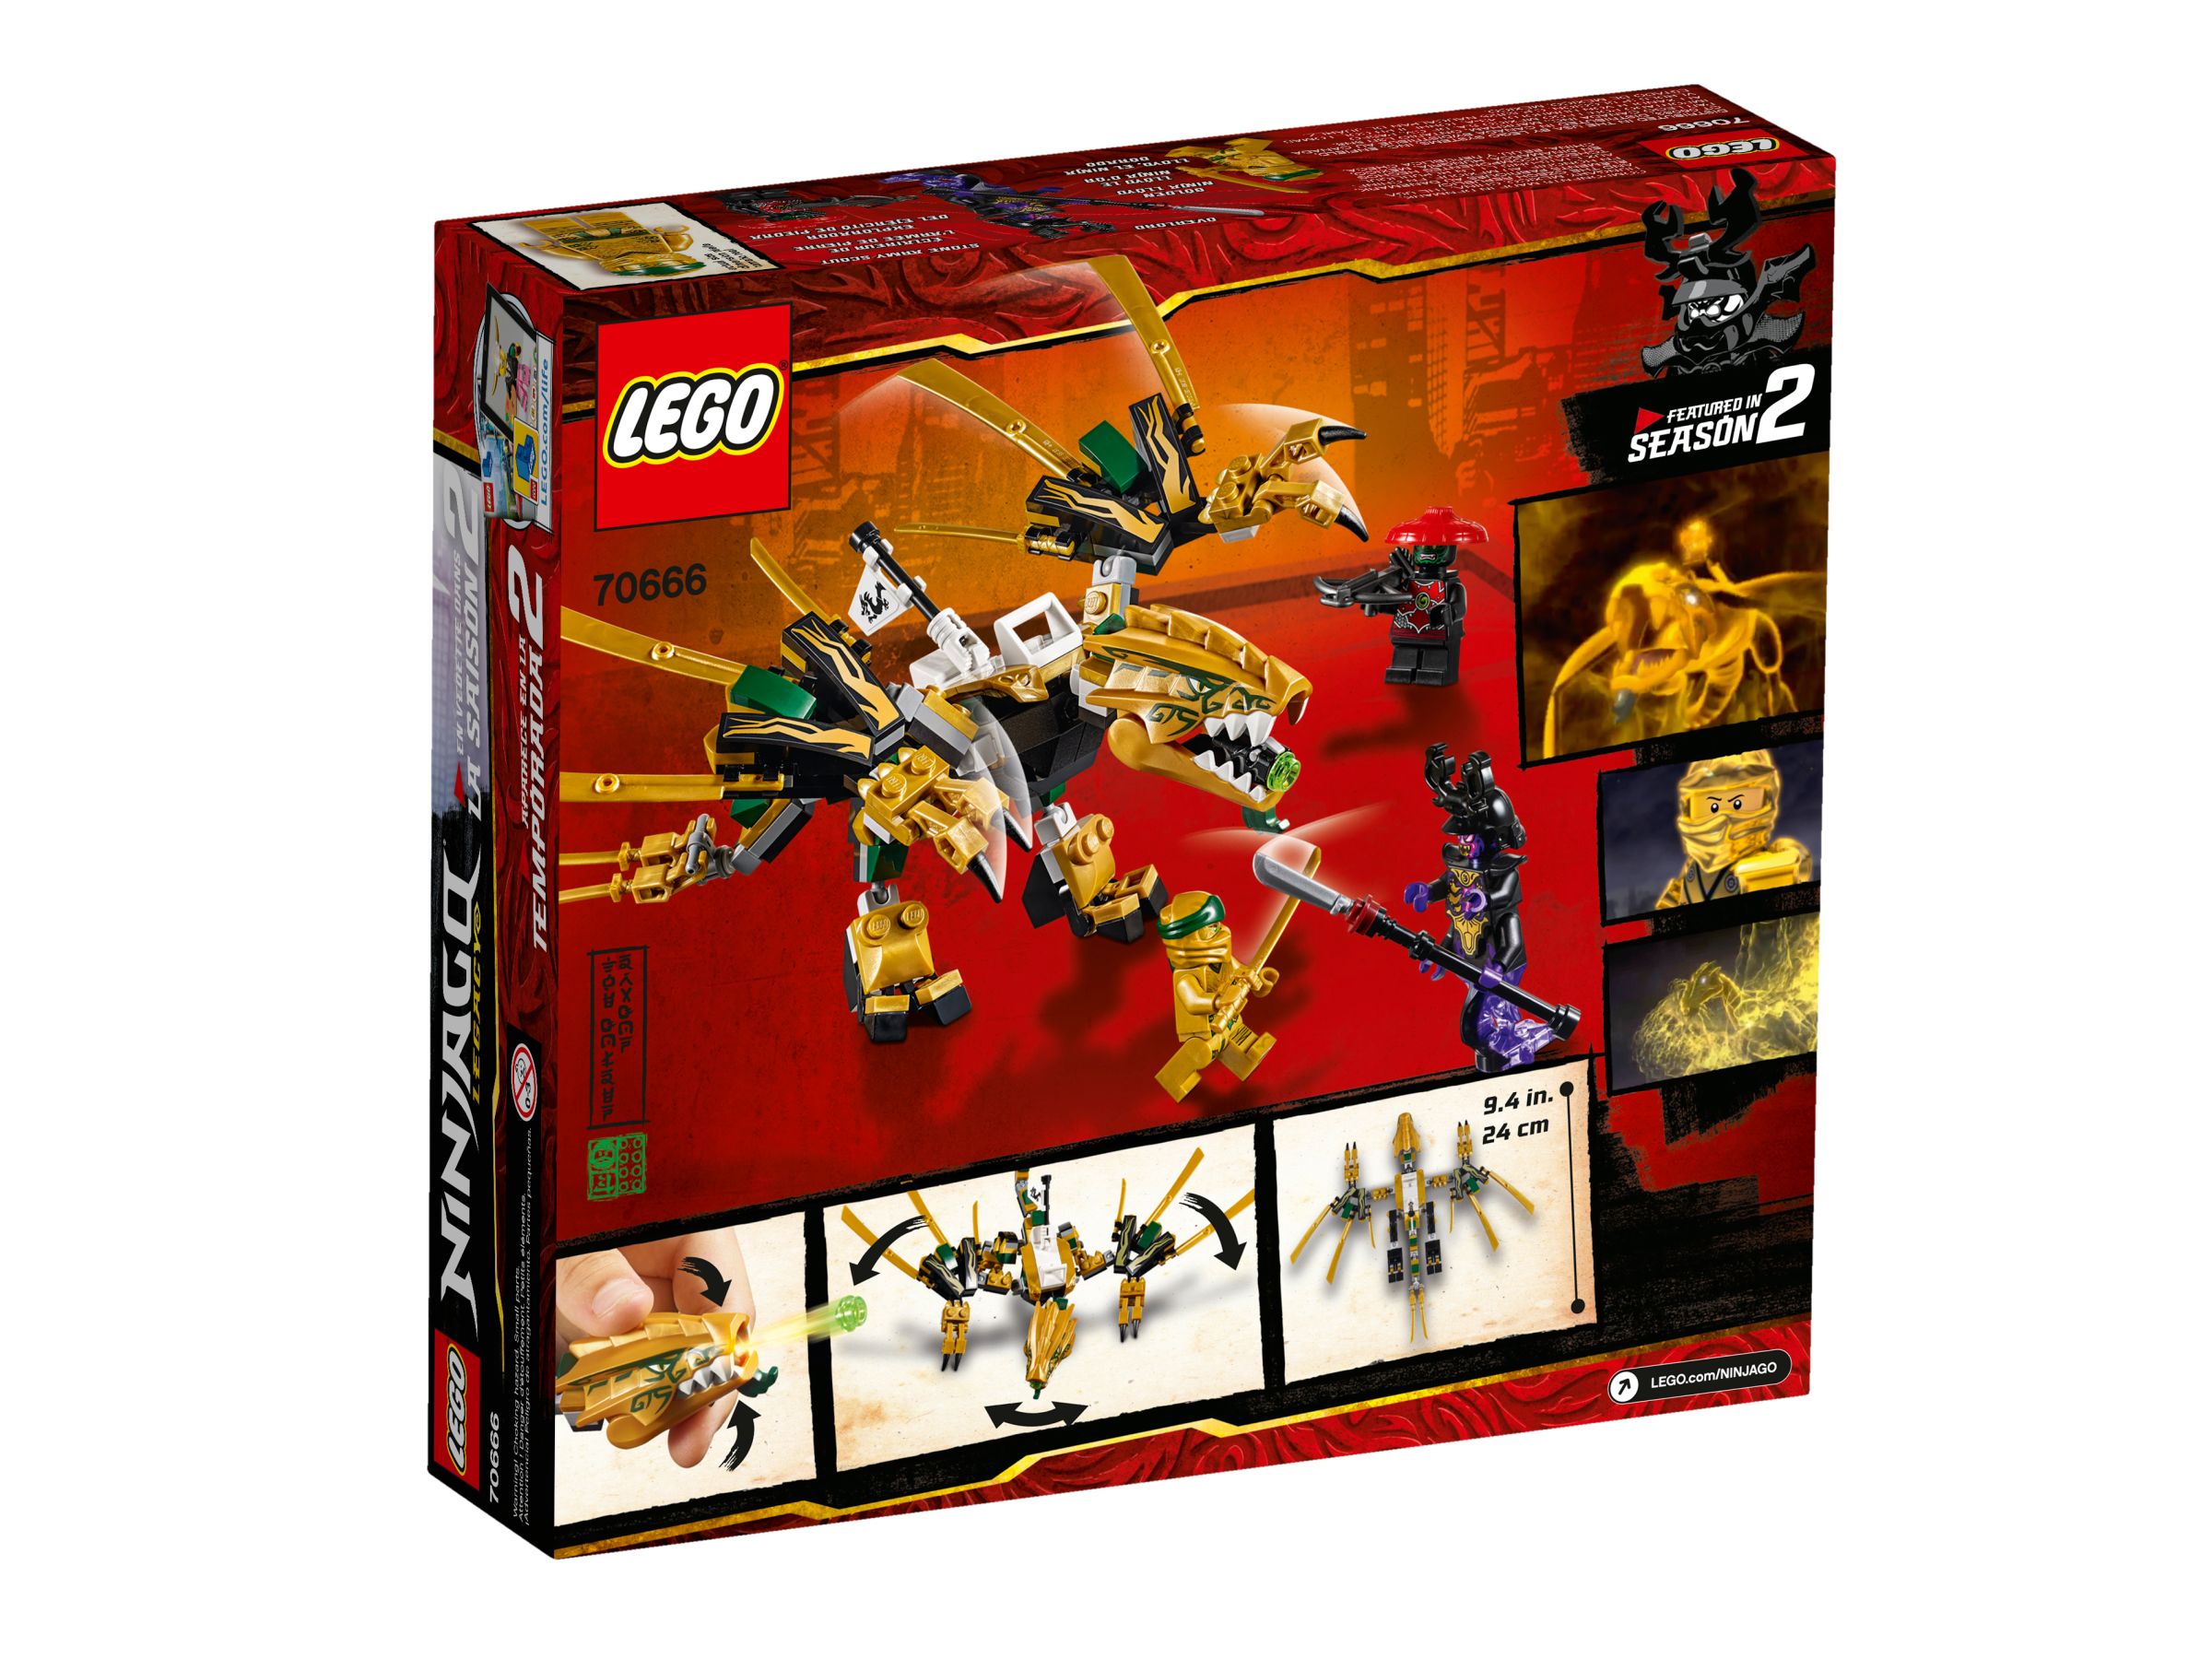 LEGO Ninjago 70666 Goldener Drache LEGO_70666_alt4.jpg